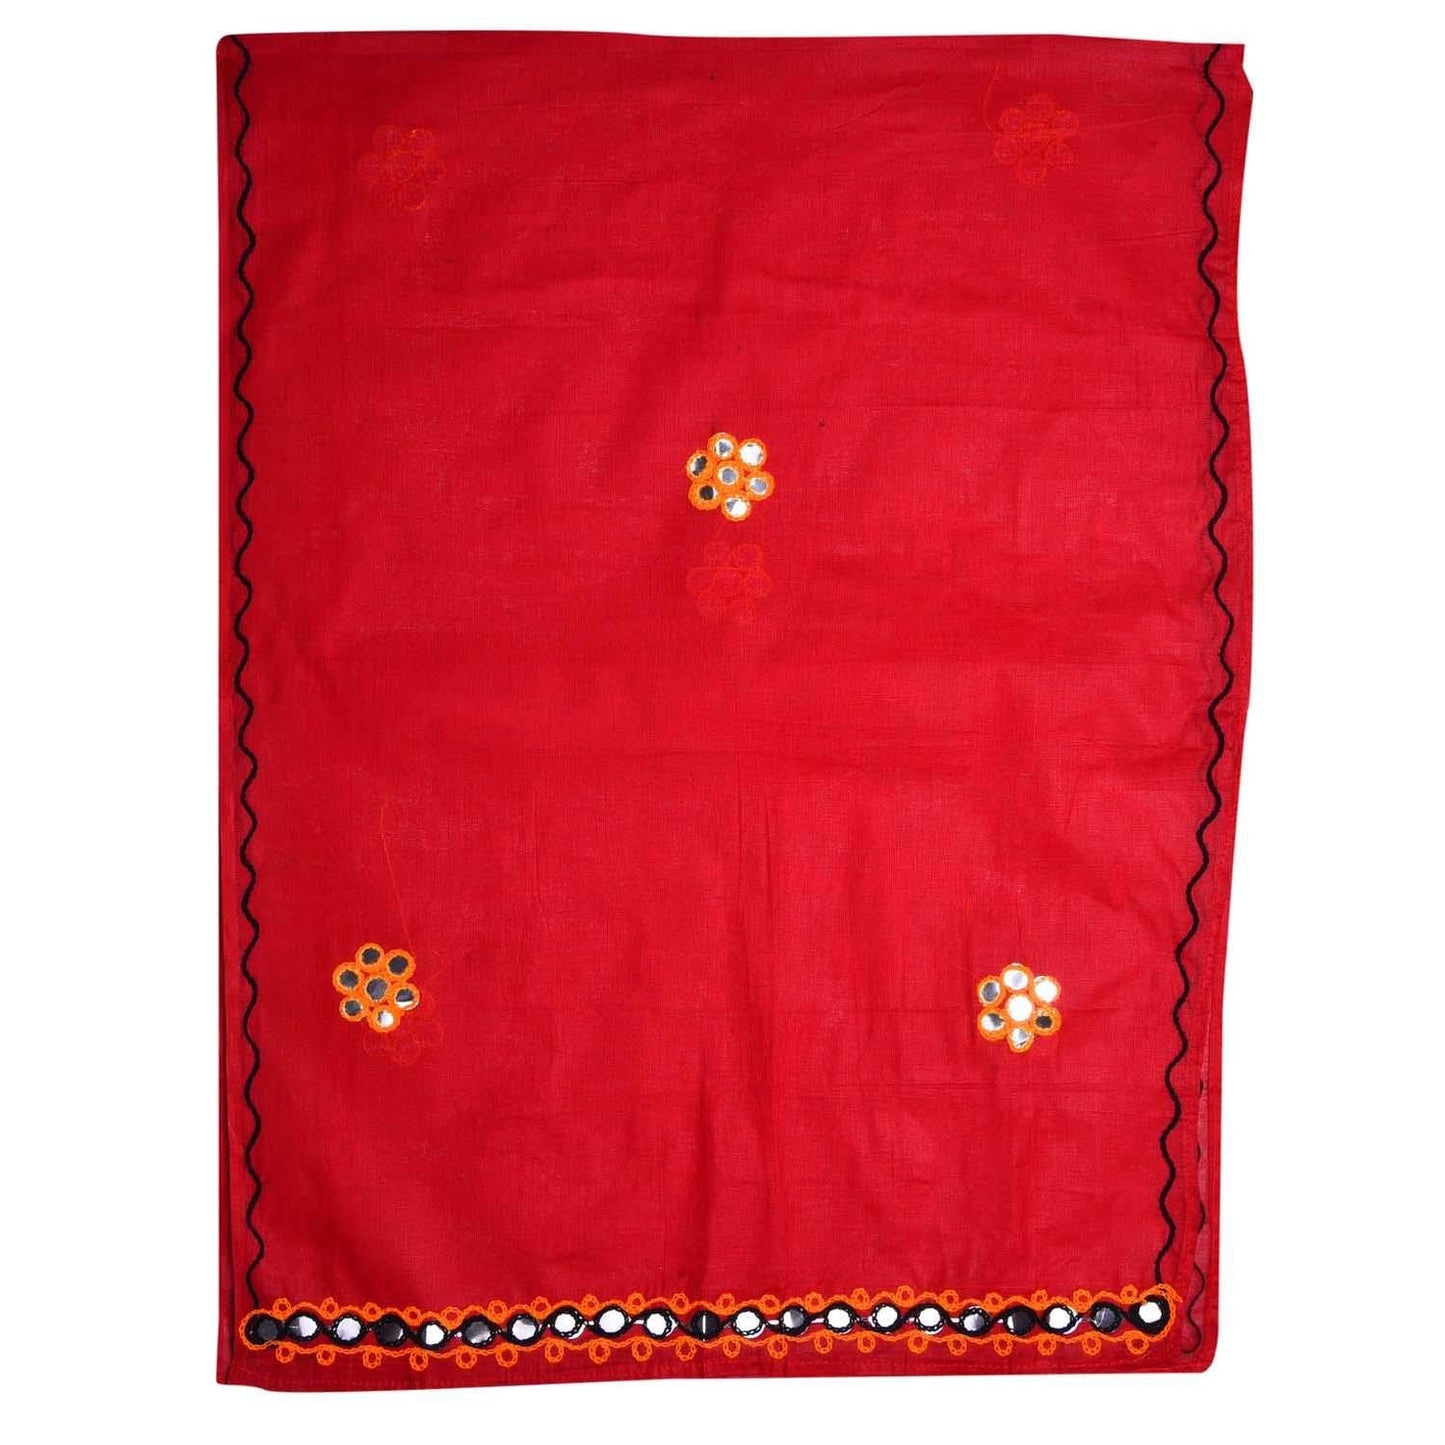 Girl's Cotton Ghaghra Choli, Leghnga Choli, Chania Choli 144 -  Wish Karo Dresses